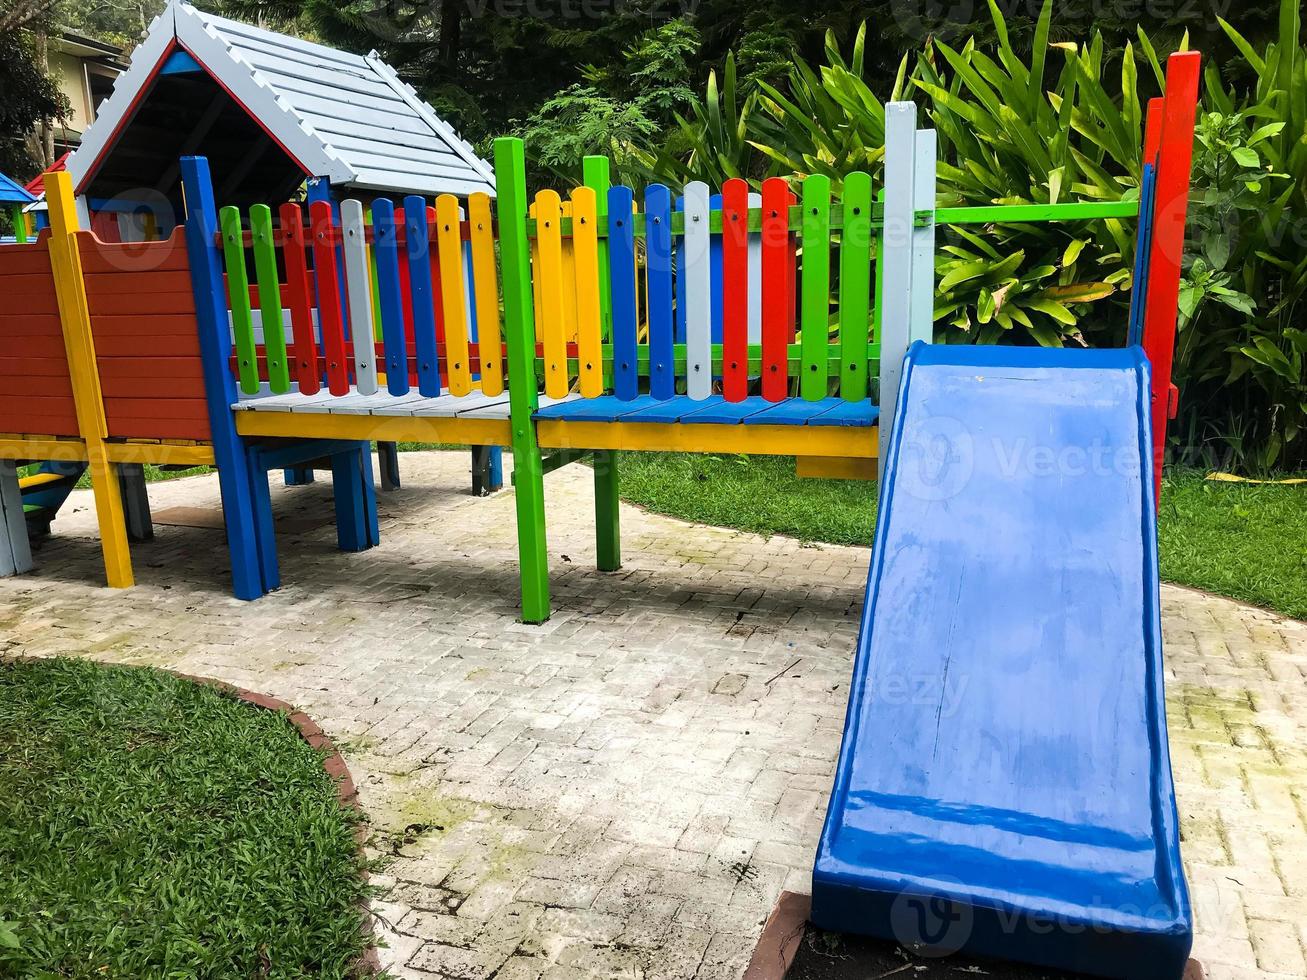 équipements de jeux modernes. aire de jeux colorée et moderne pour enfants dans la cour du parc photo